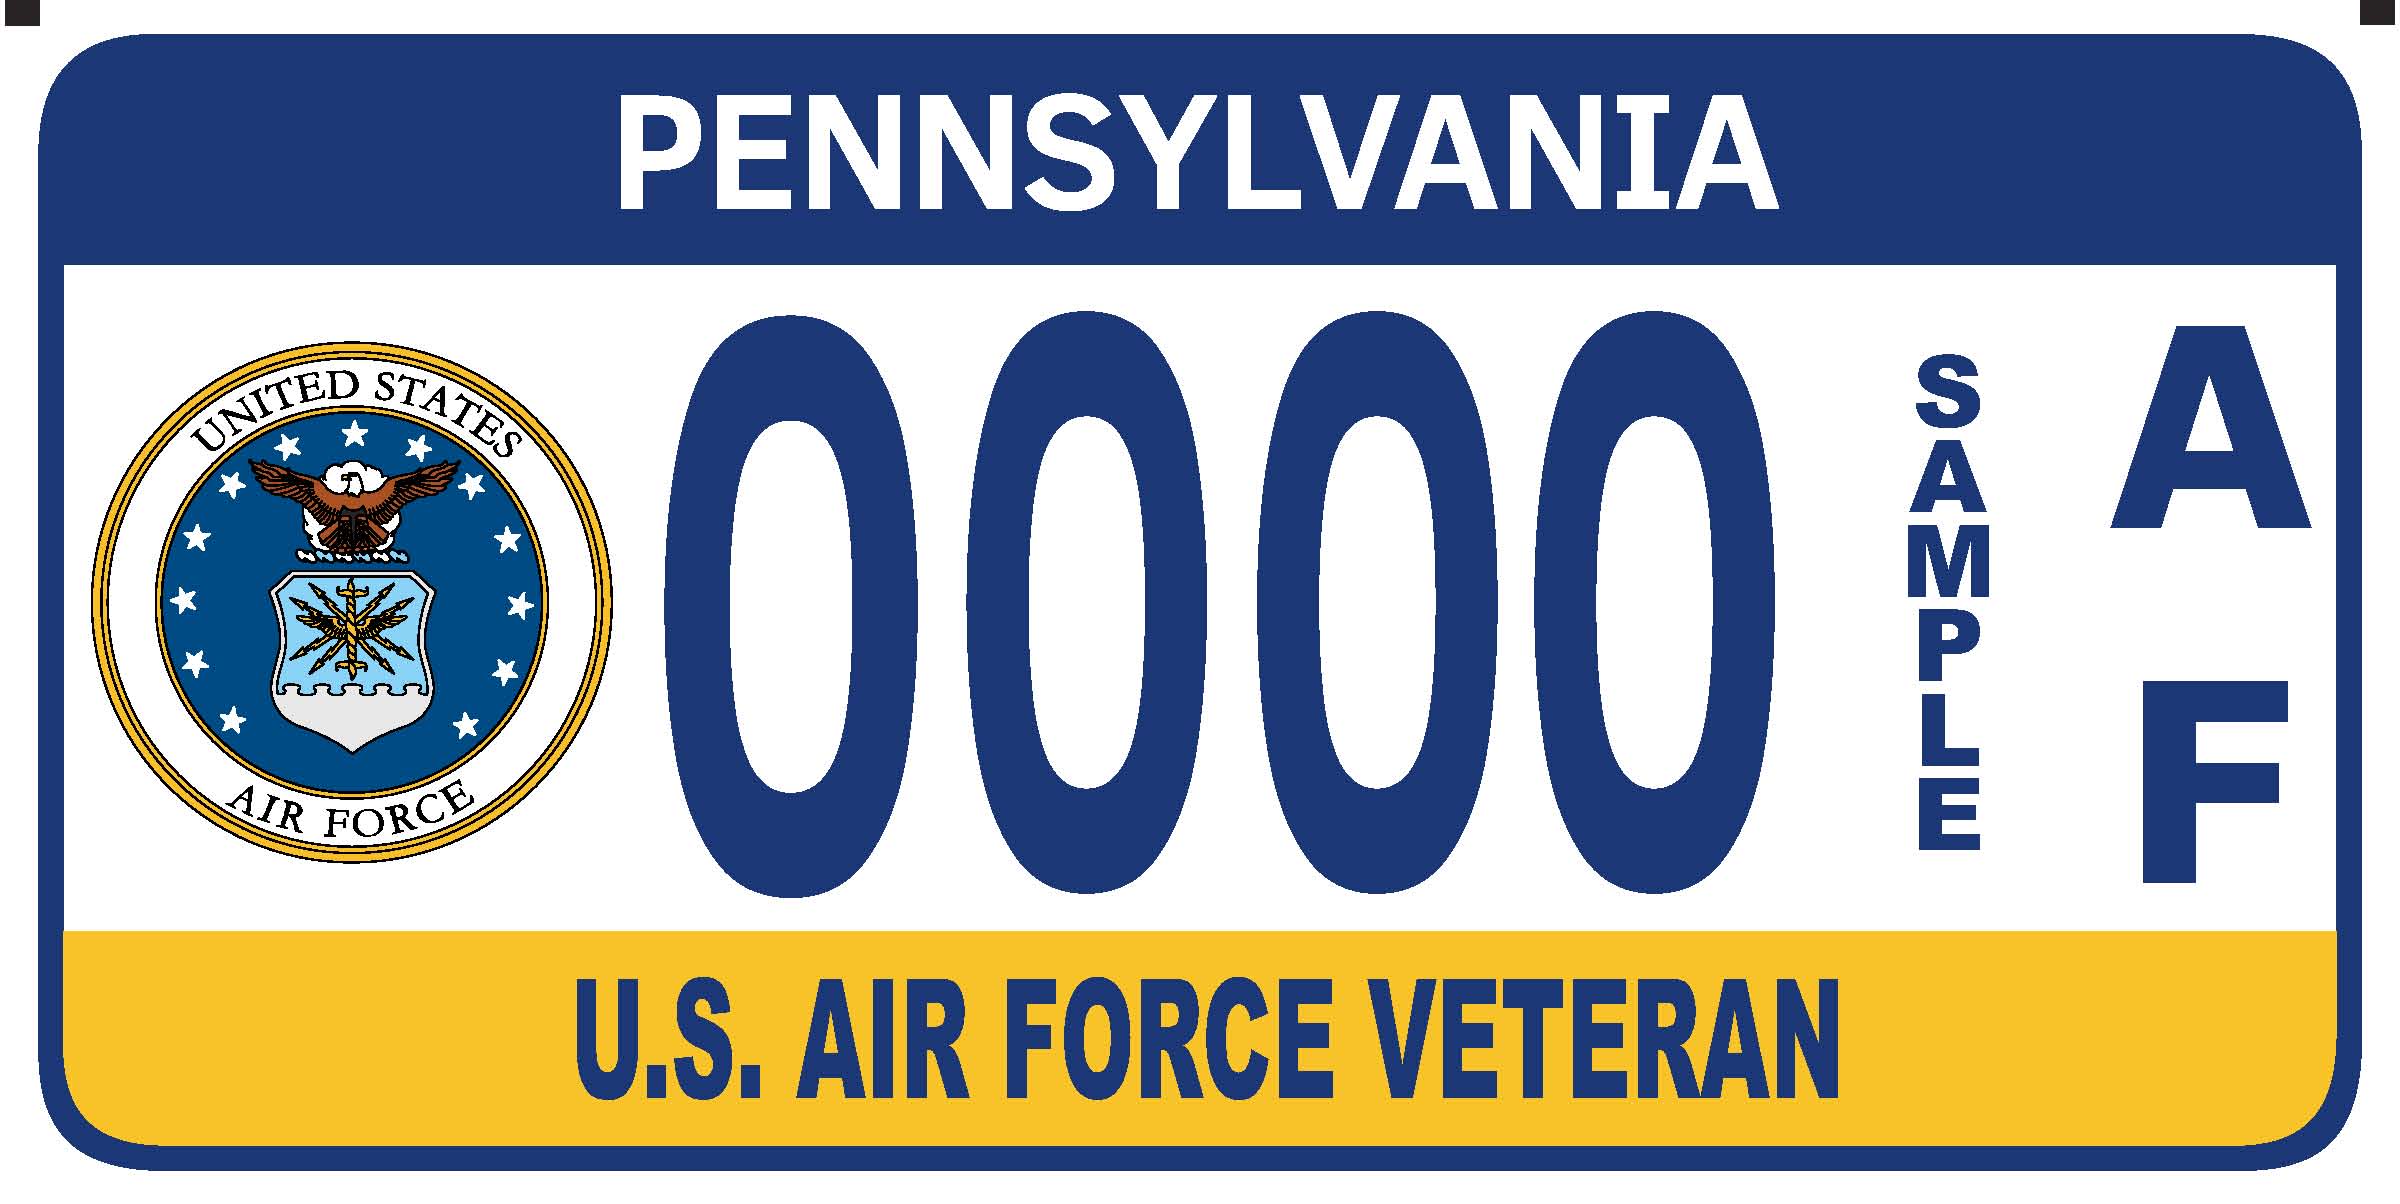 U.S. Air Force Veteran plate